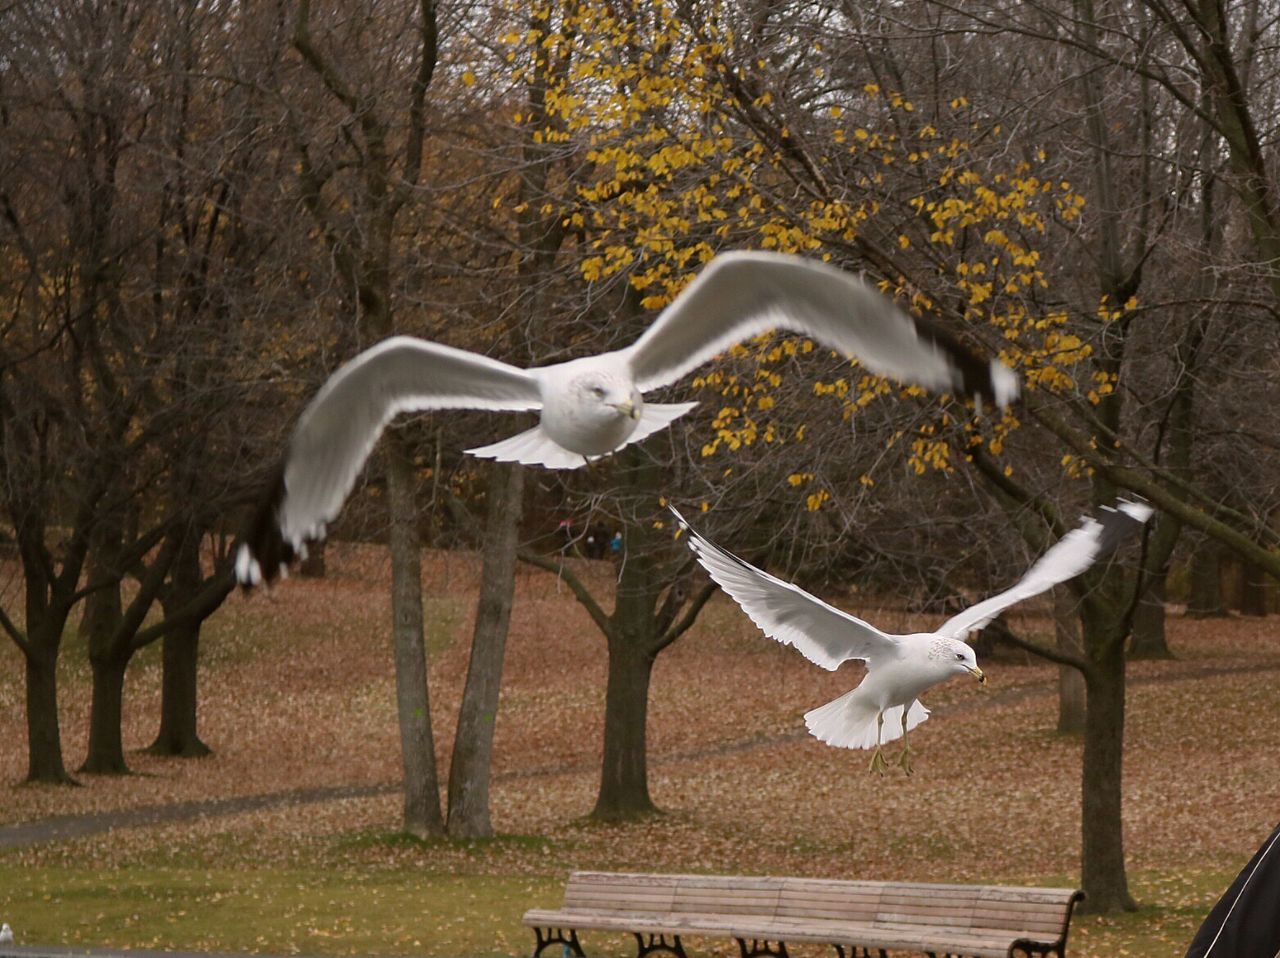 WHITE BIRD FLYING OVER BARE TREE